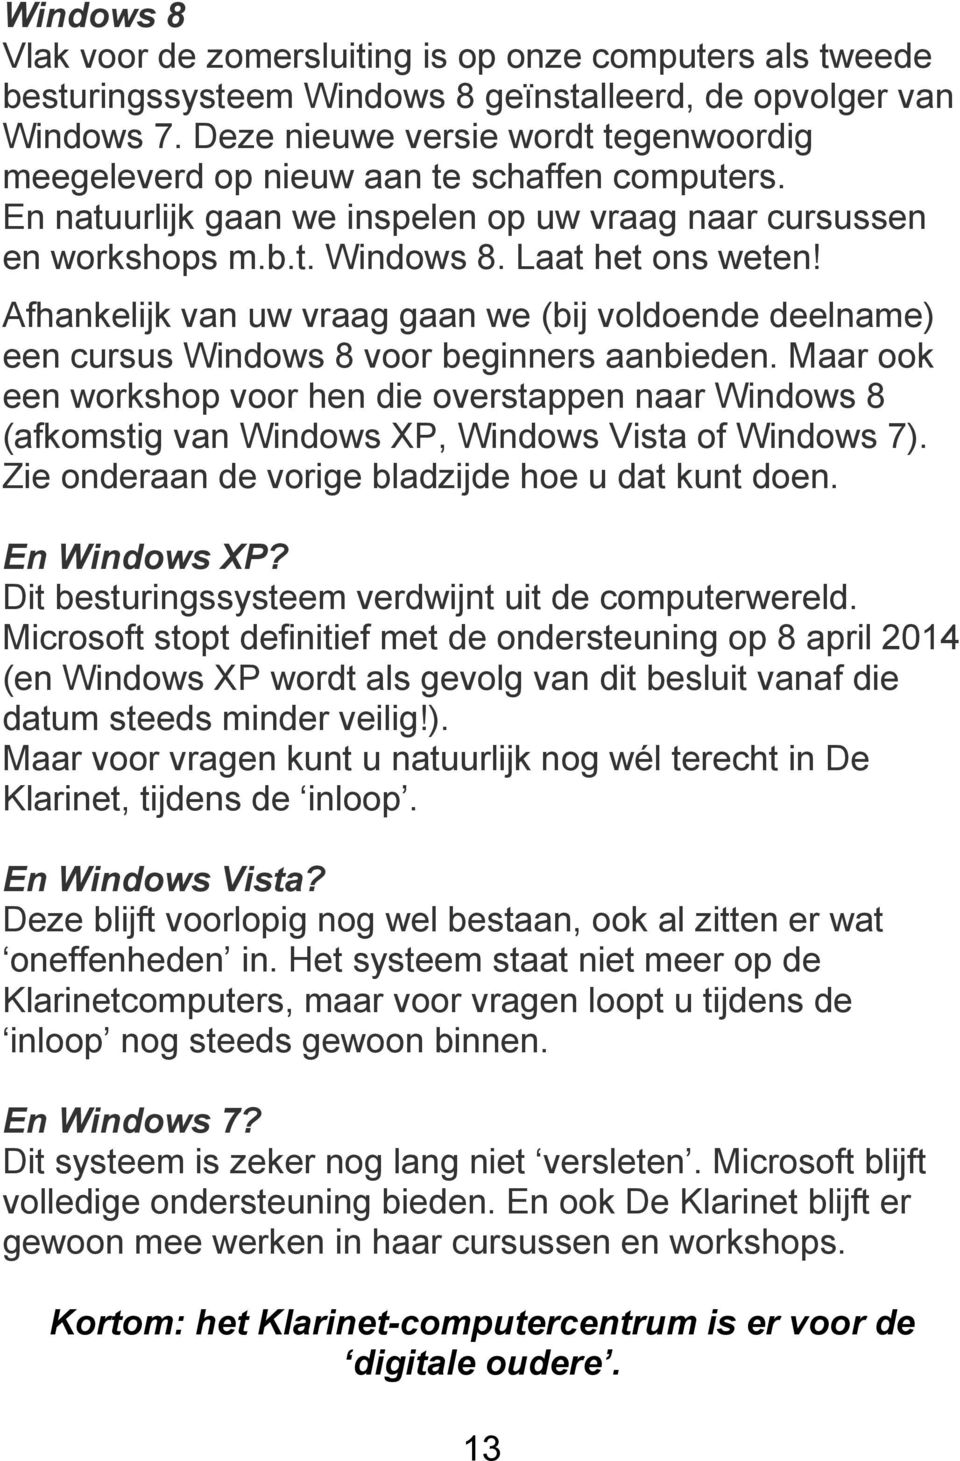 Afhankelijk van uw vraag gaan we (bij voldoende deelname) een cursus Windows 8 voor beginners aanbieden.